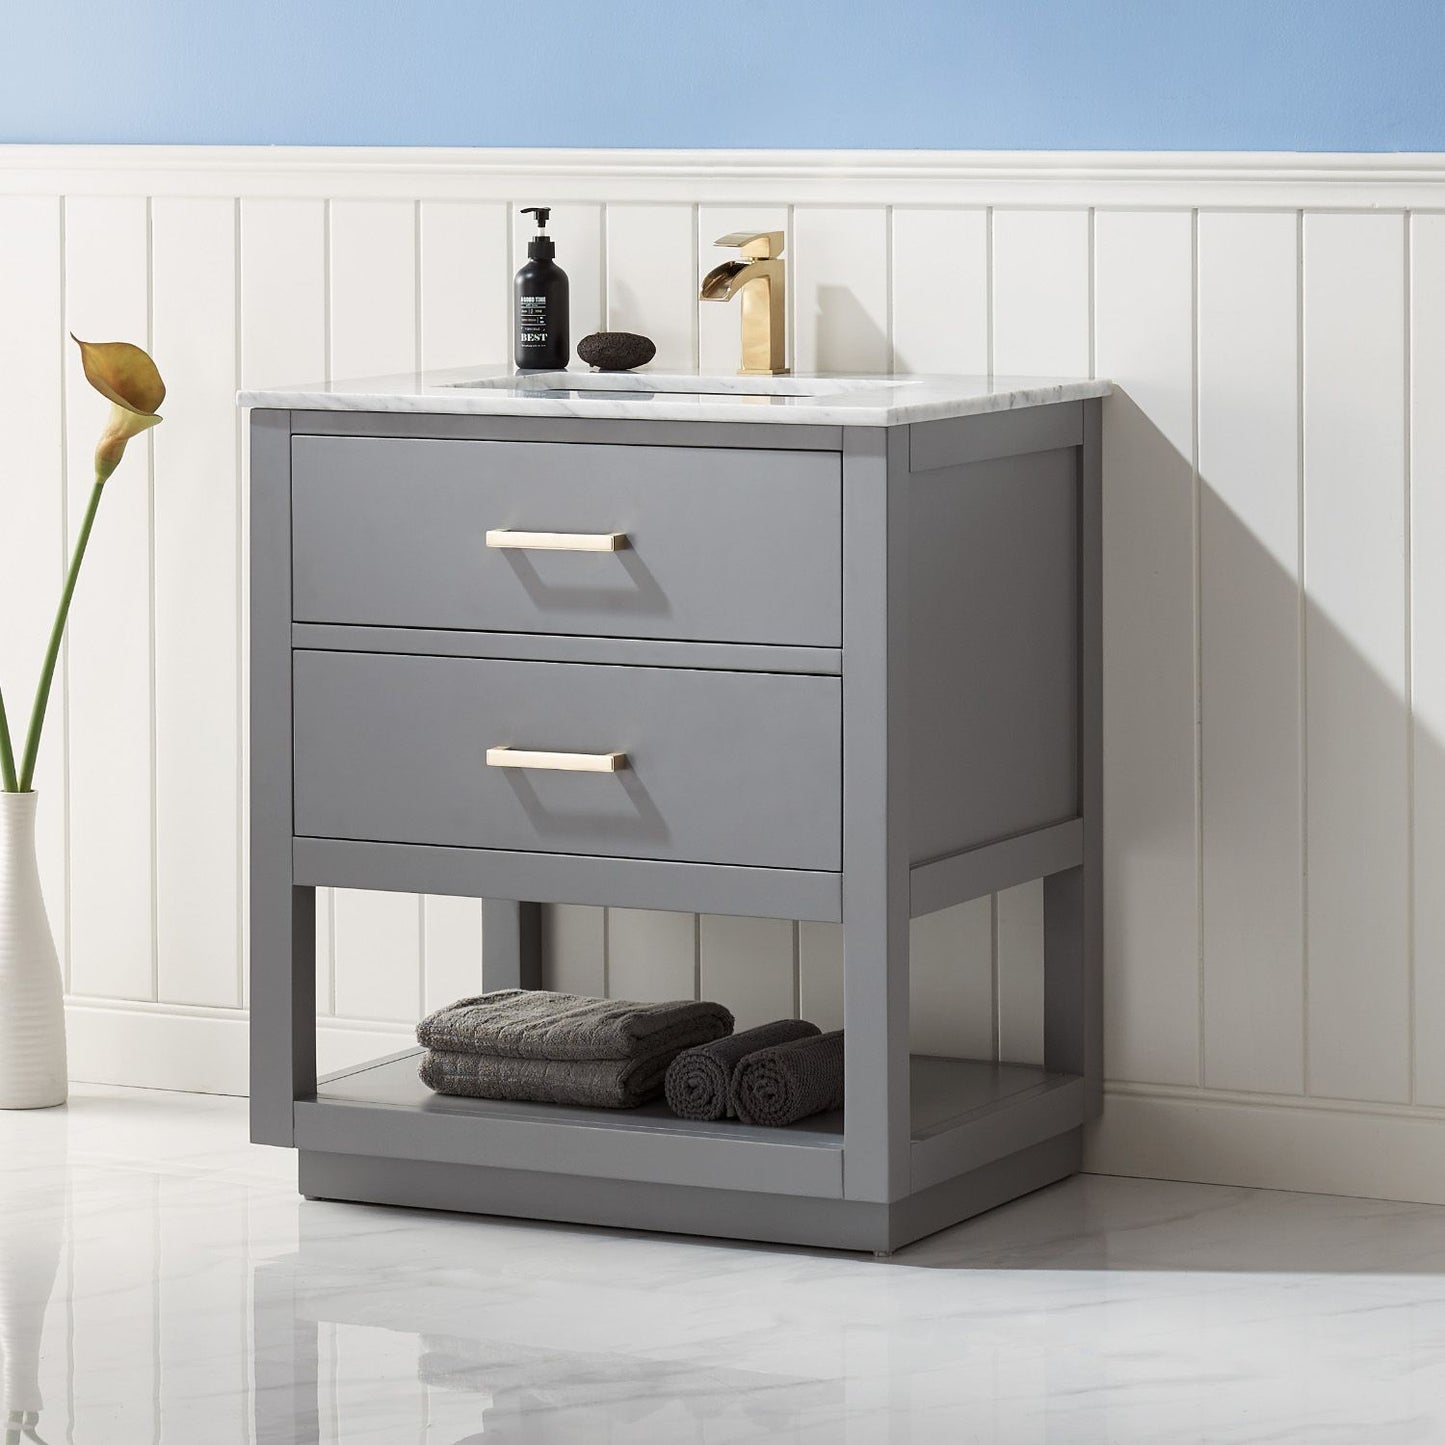 Altair Remi 30" Single Bathroom Vanity Set Countertop without Mirror - Luxe Bathroom Vanities